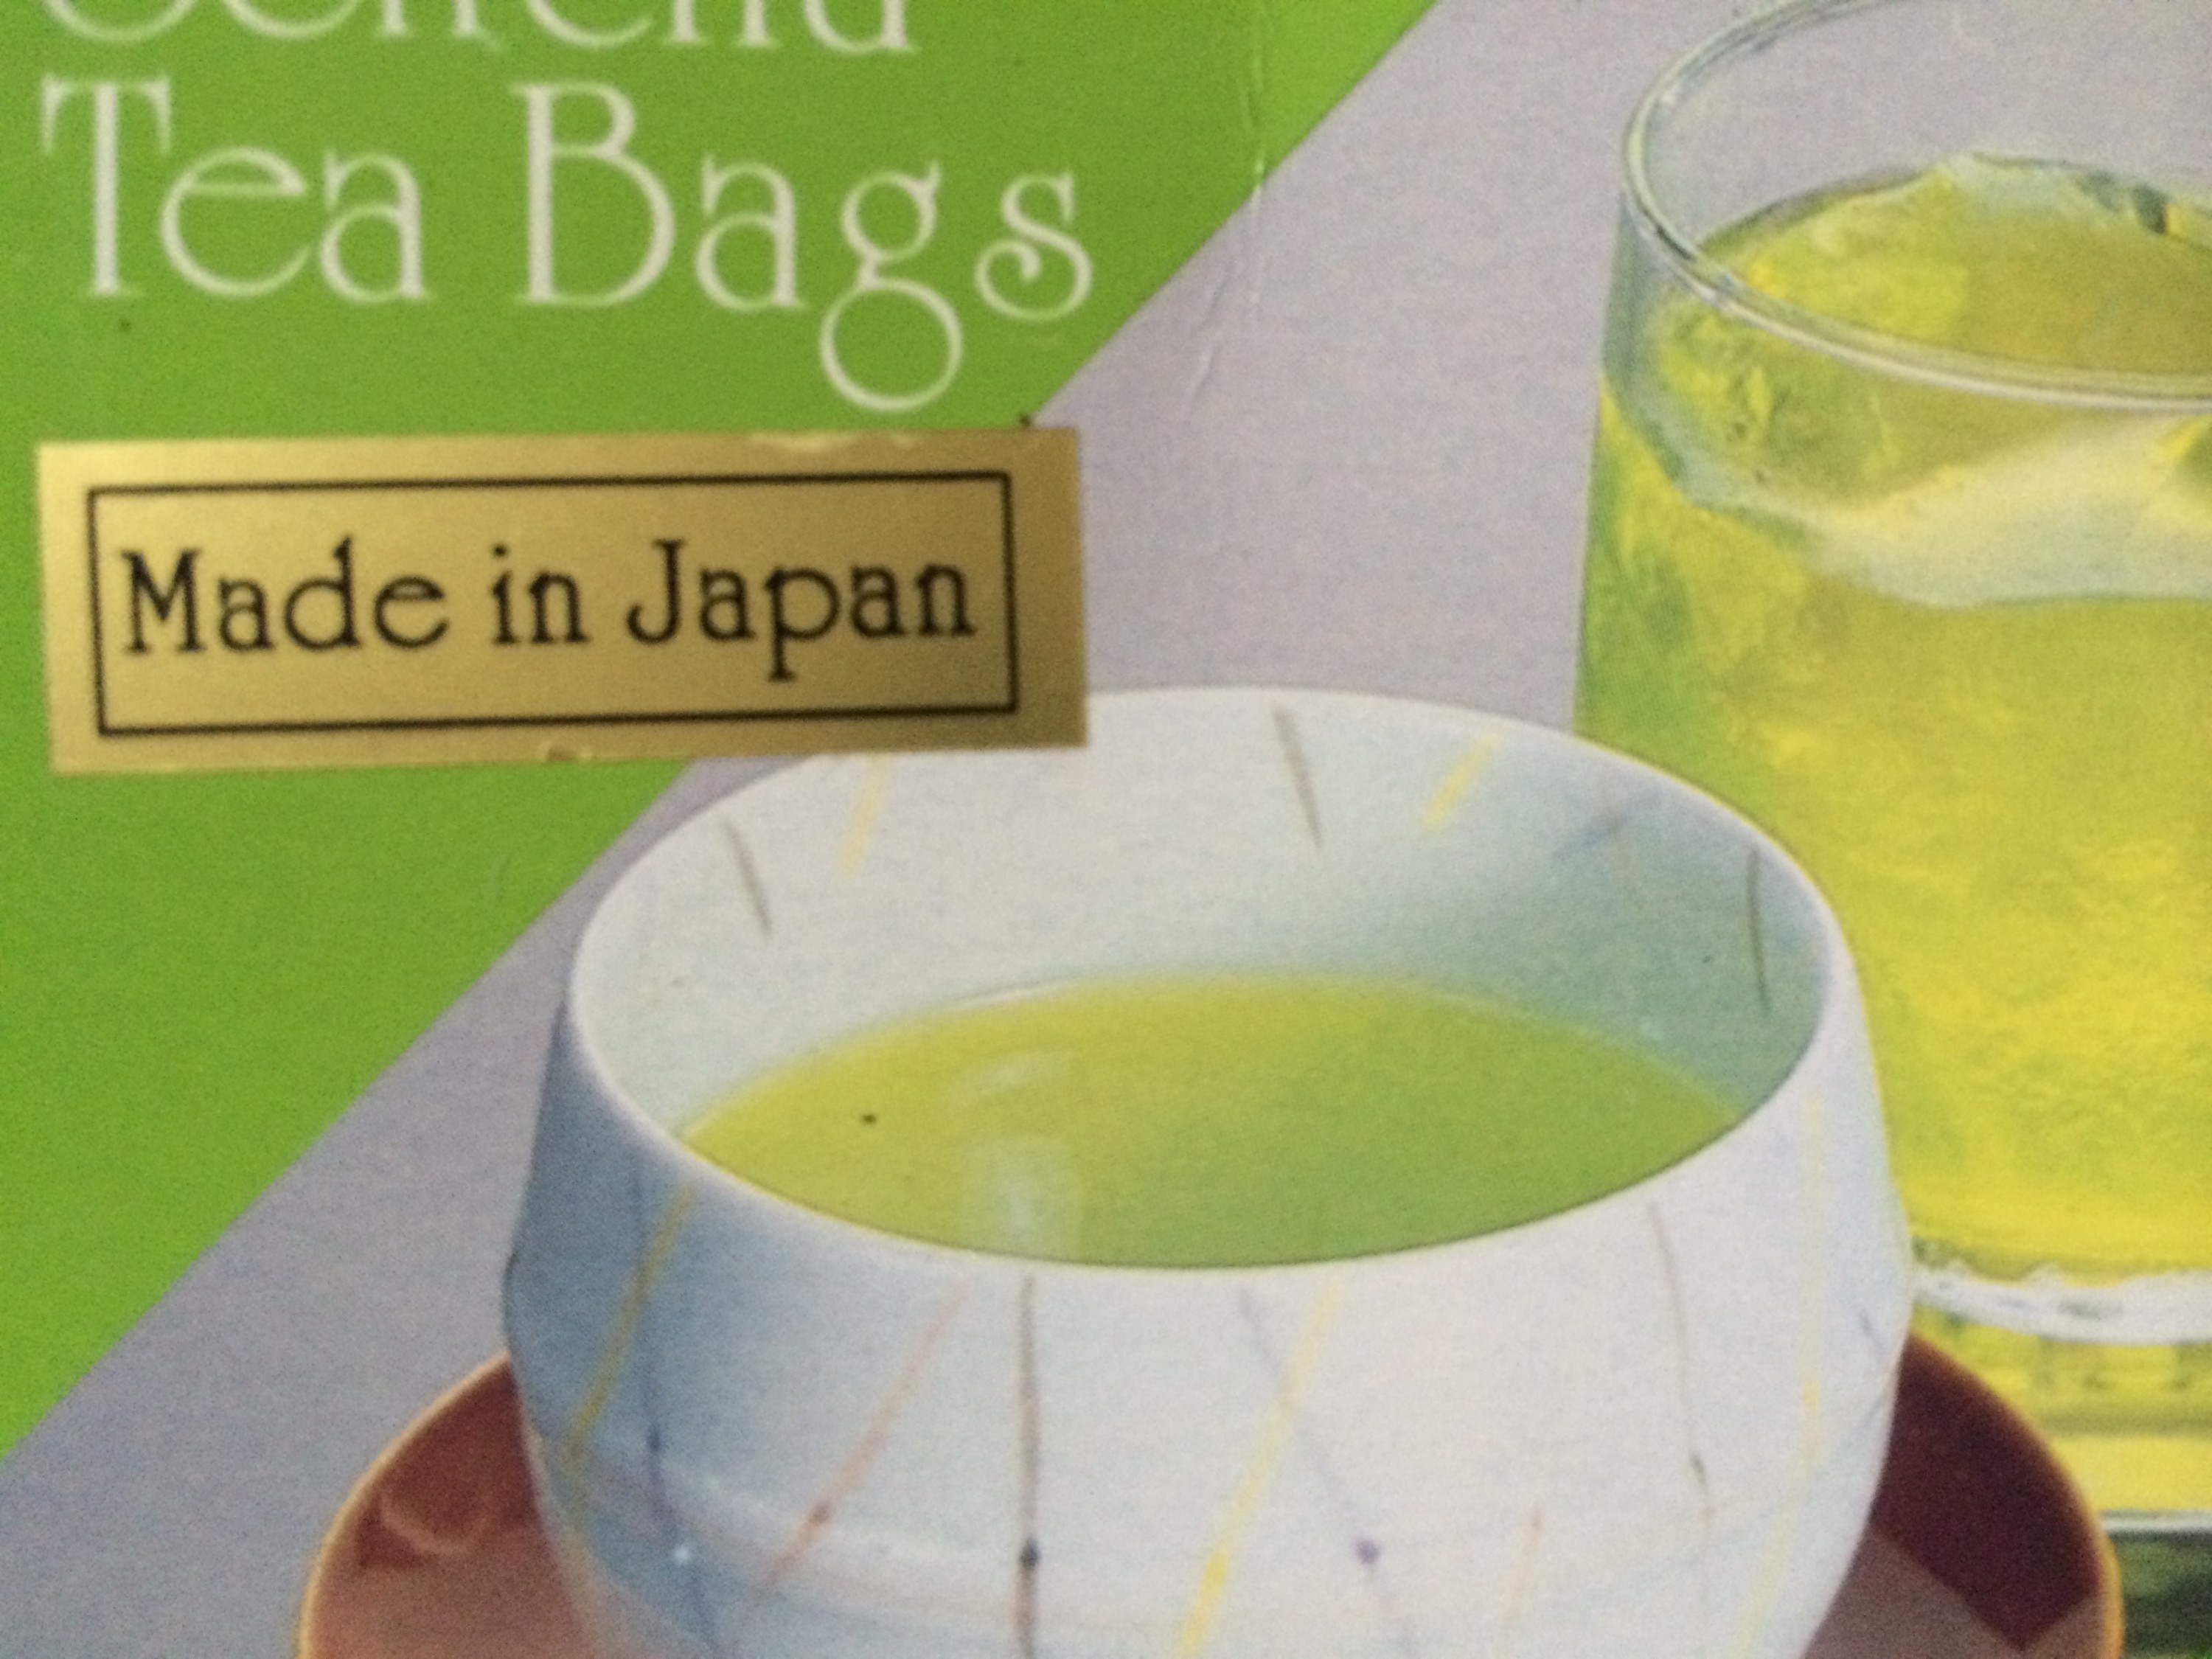 О-тя укэ или как заварить зеленый чай из Японии